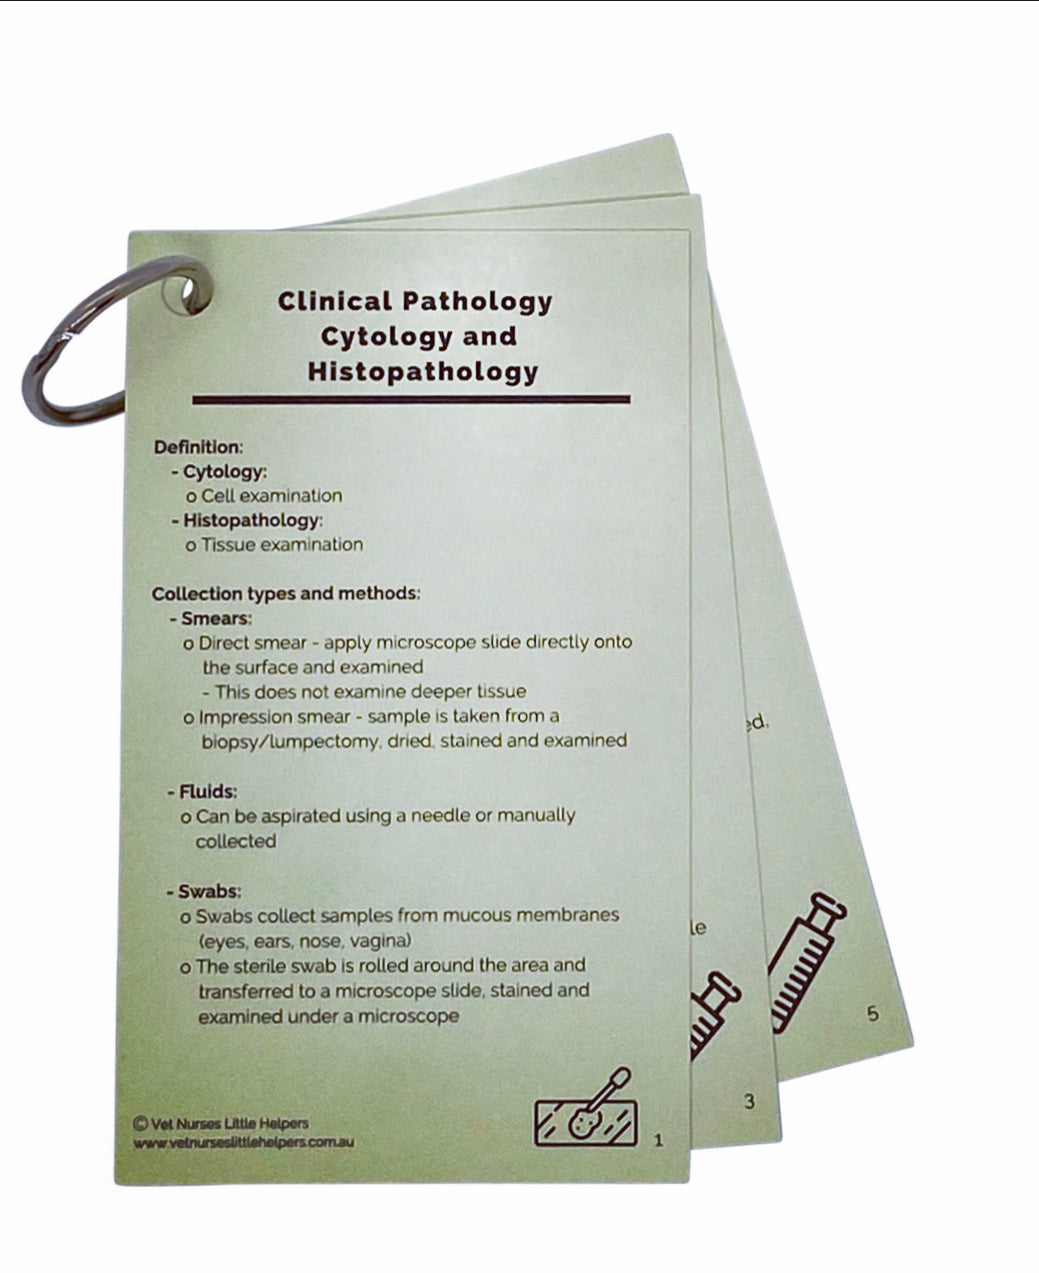 Clinical Pathology - Cytology and Histopathology